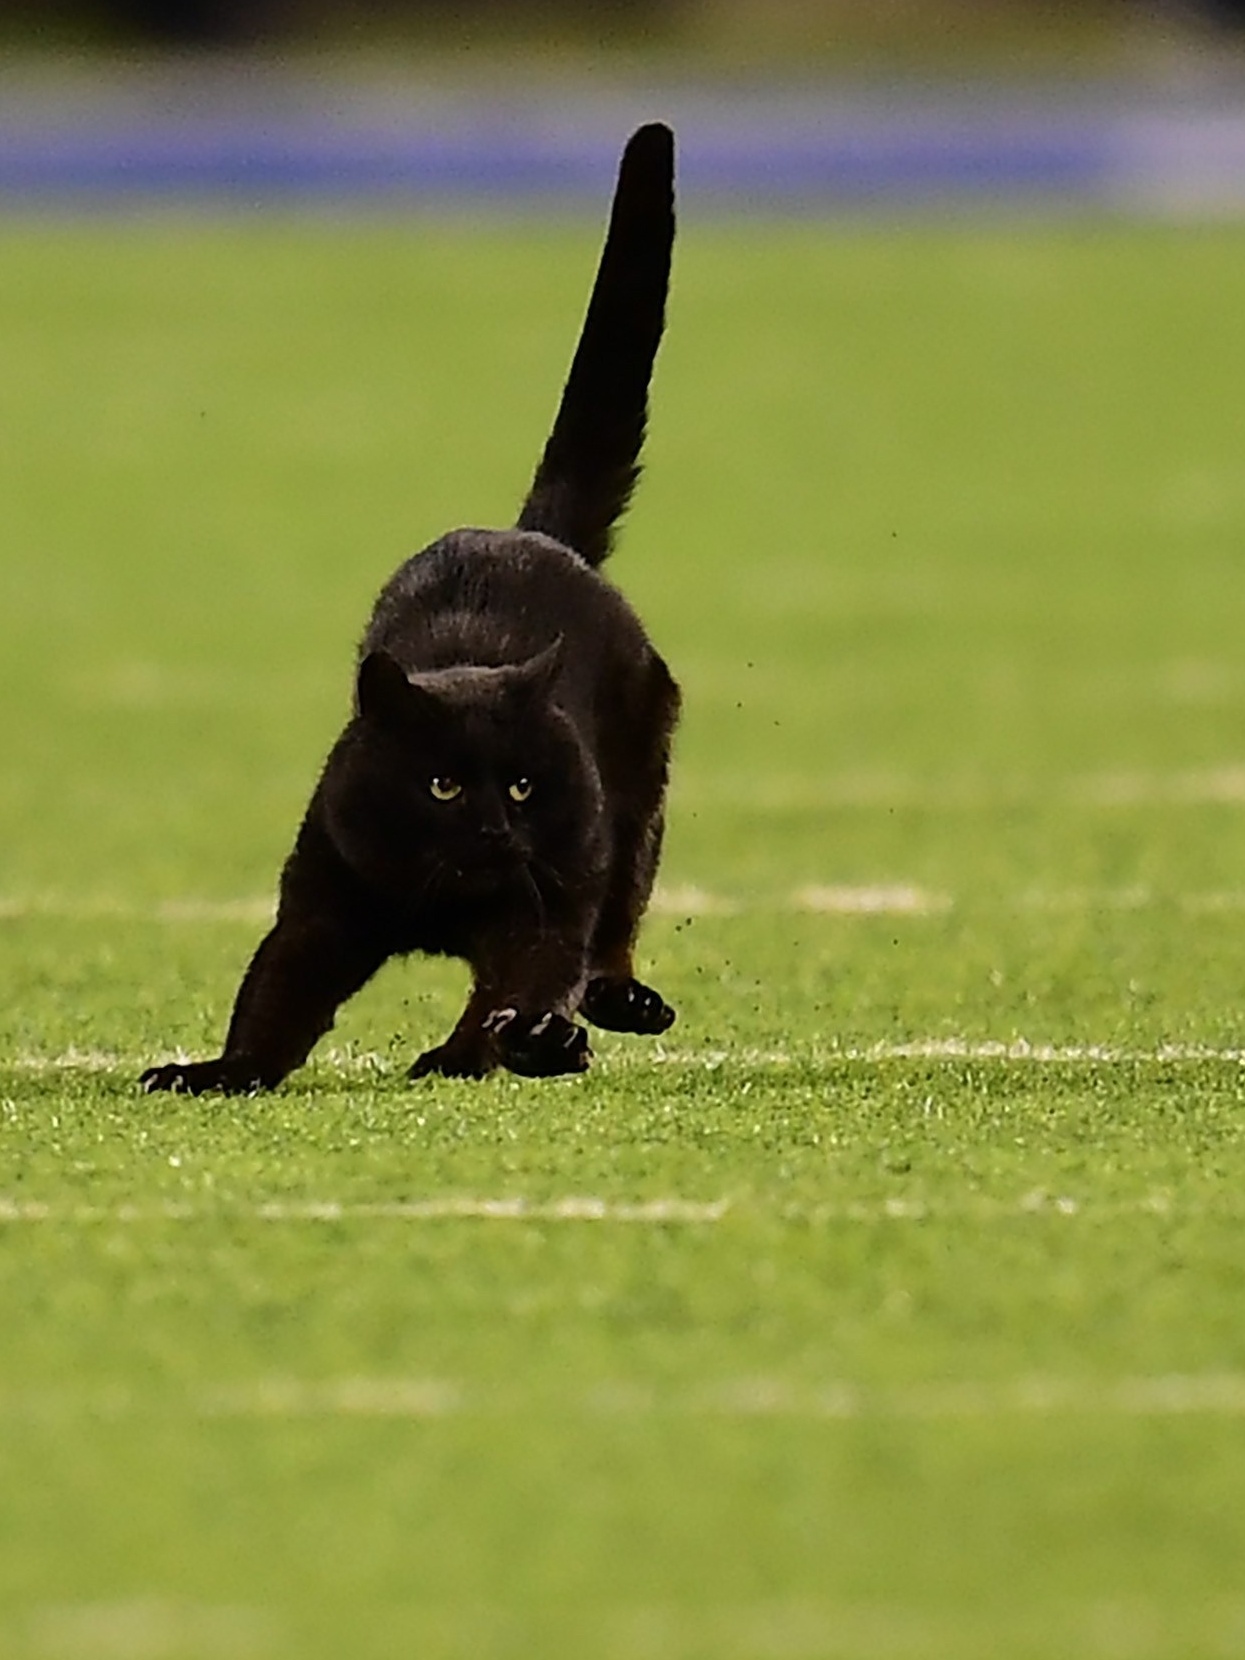 Gato preto invade jogo de futebol e leva torcedores ao delírio